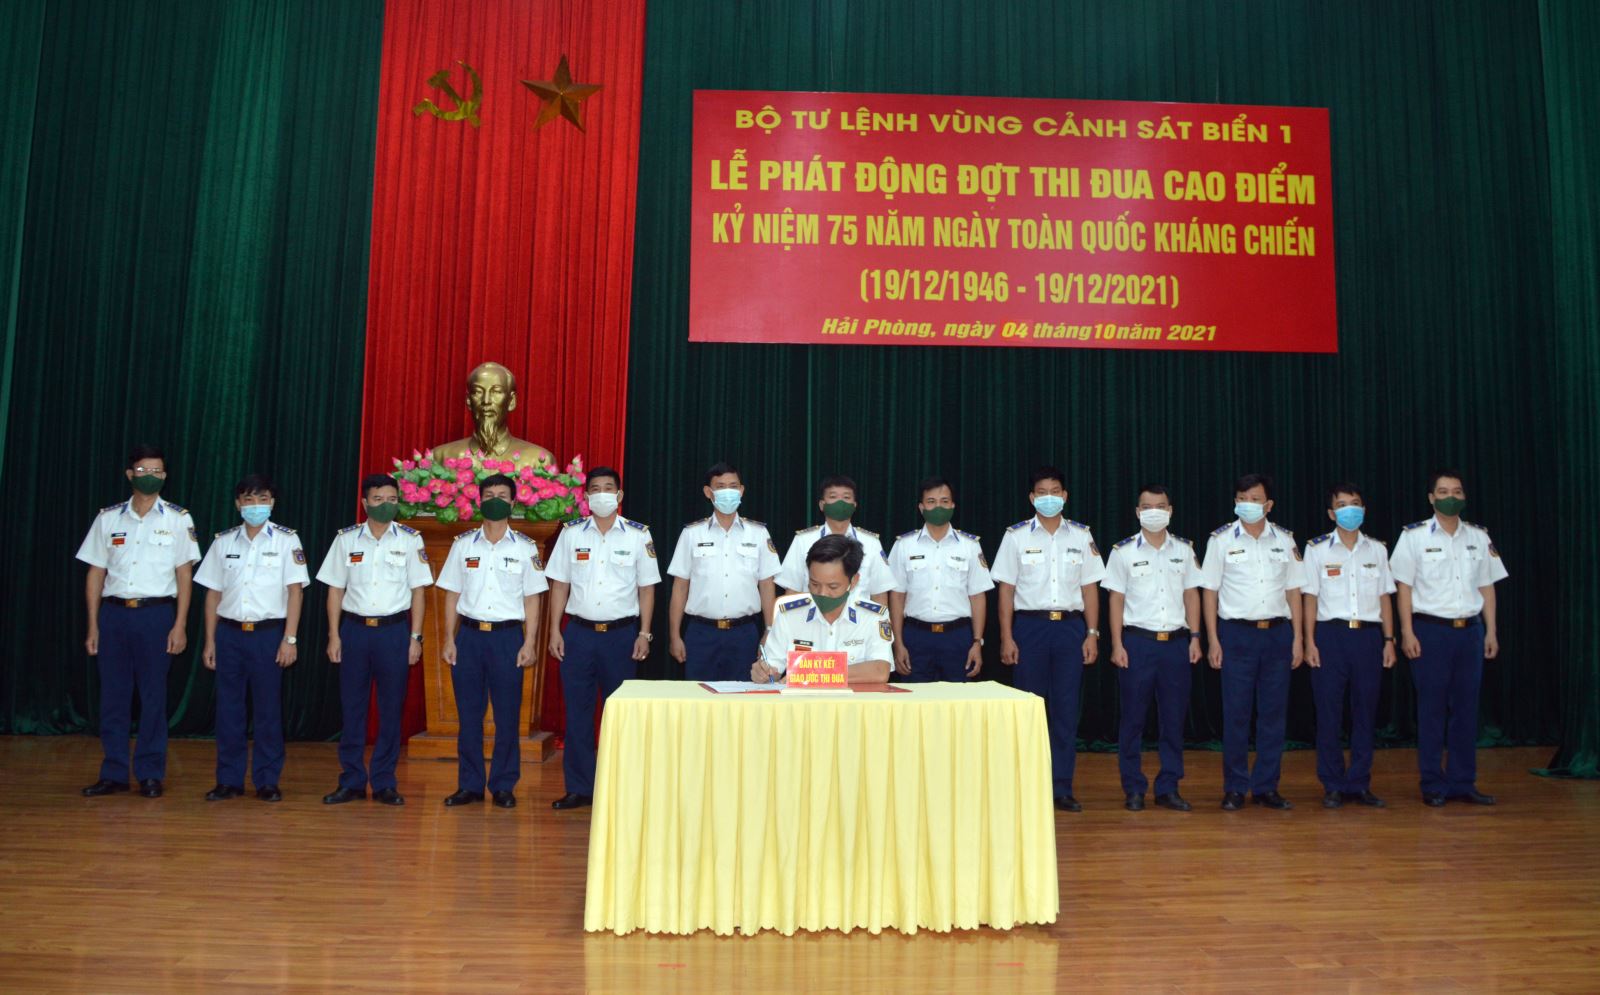  Các cơ quan, đơn vị BTL Vùng Cảnh sát biển 1 ký kết giao ước phát động đợt thi đua cao điểm.